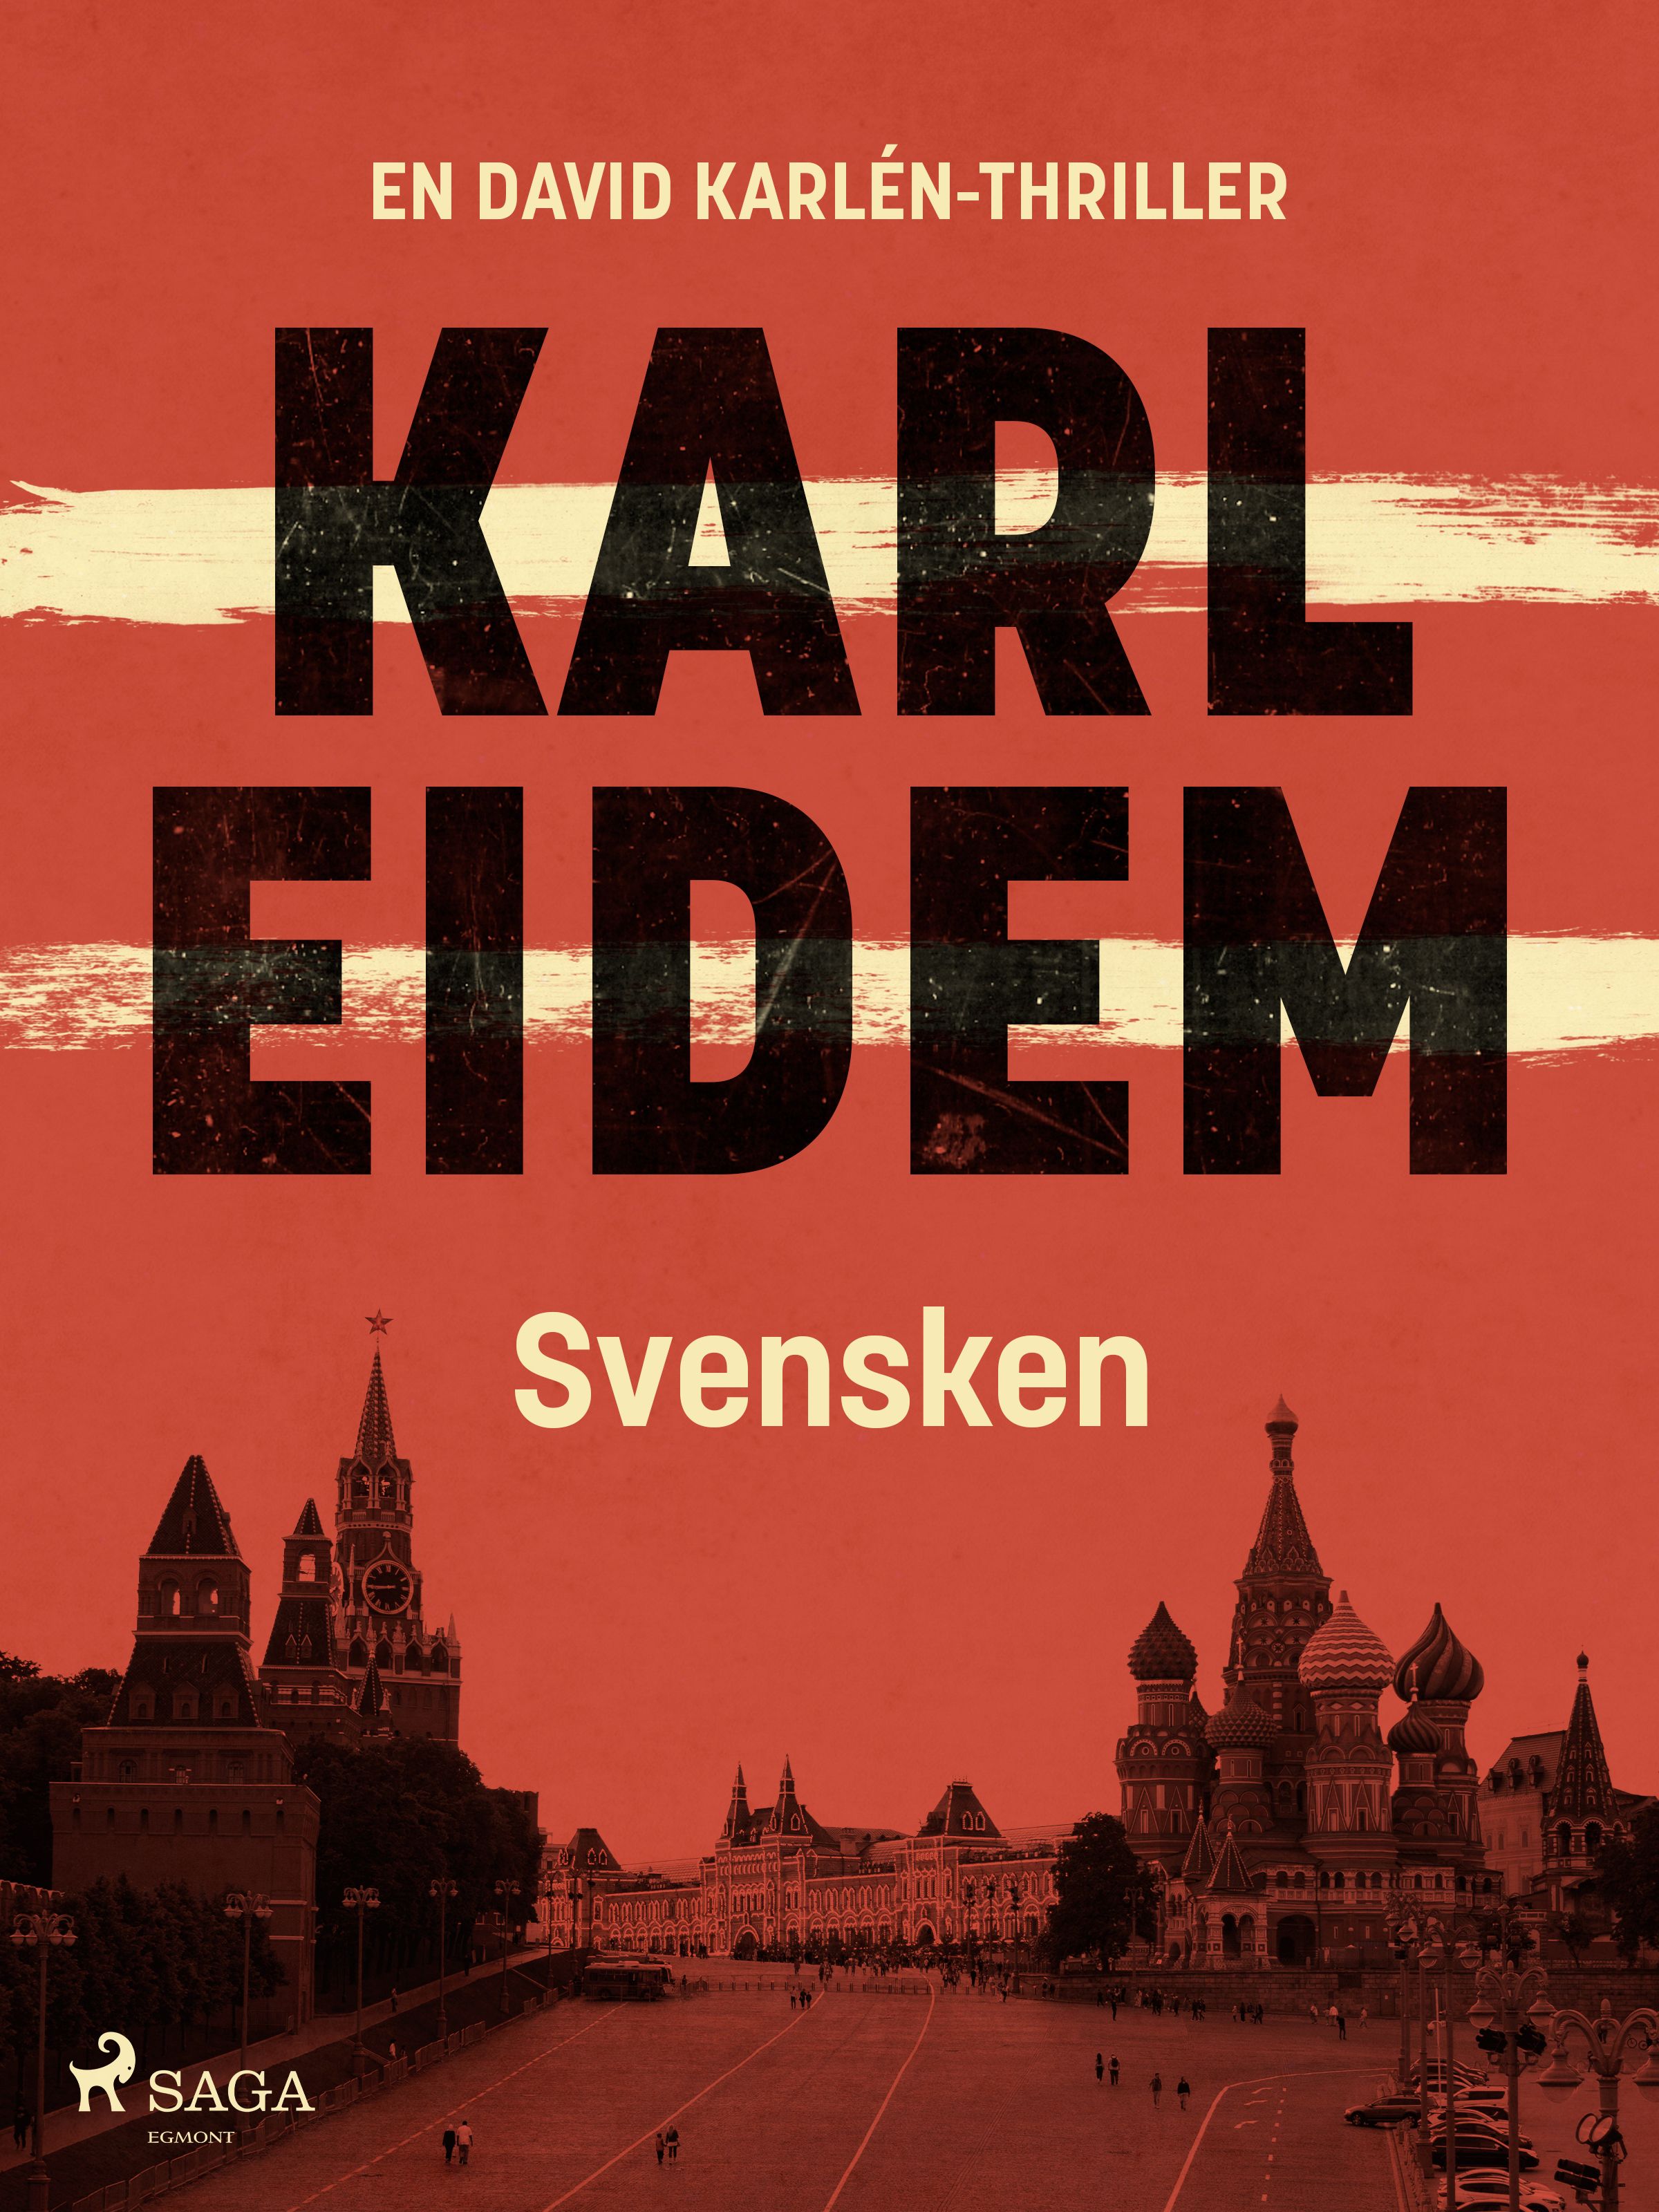 Svensken, e-bog af Karl Eidem